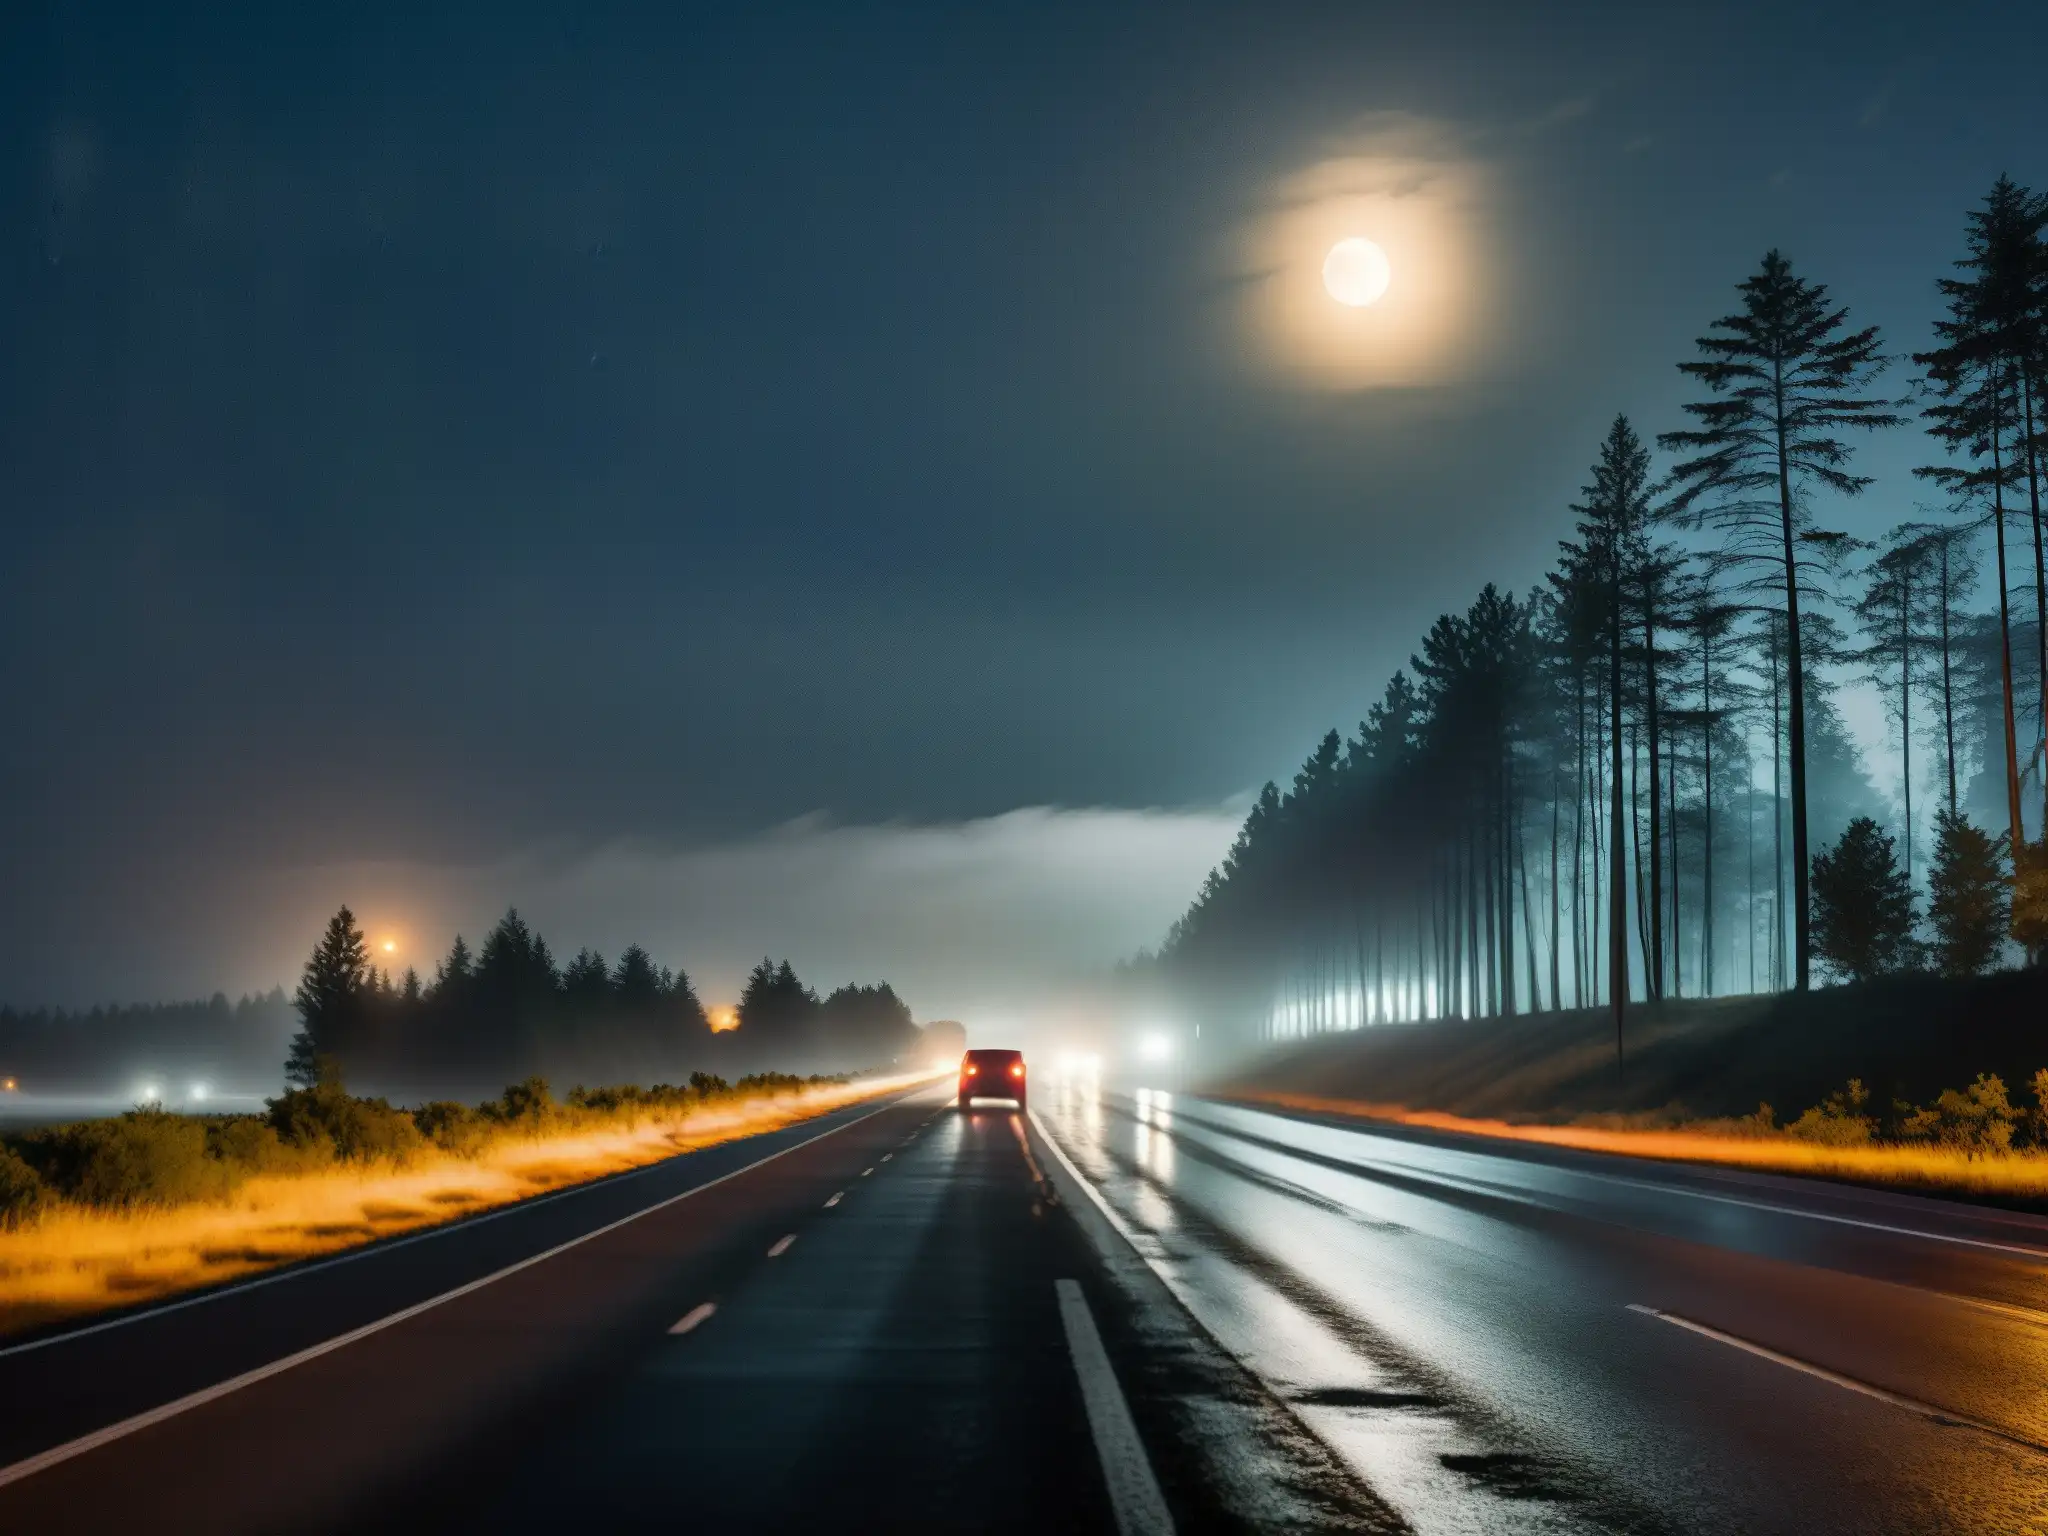 Carretera maldita americana, figura en la niebla, coche averiado, luna ominosa y árboles amenazantes